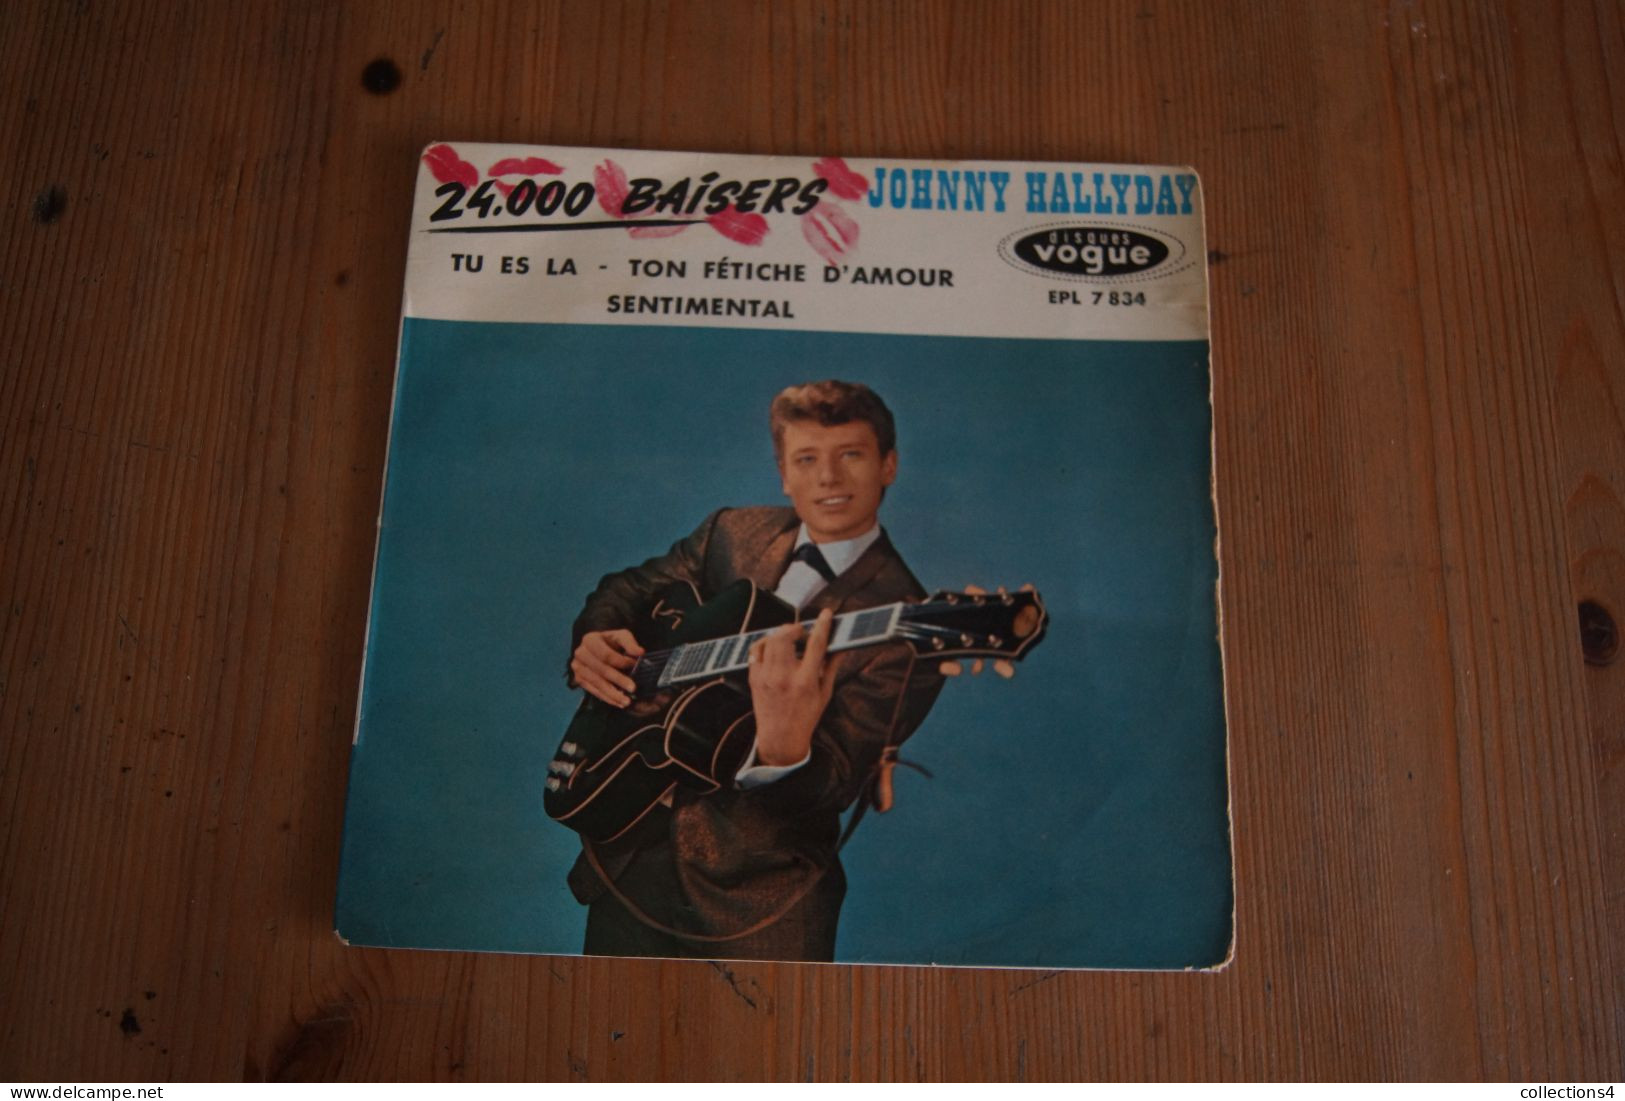 JOHNNY HALLYDAY 24 000 BAISERS  EP   1961 LANGUETTE VALEUR+ - 45 G - Maxi-Single